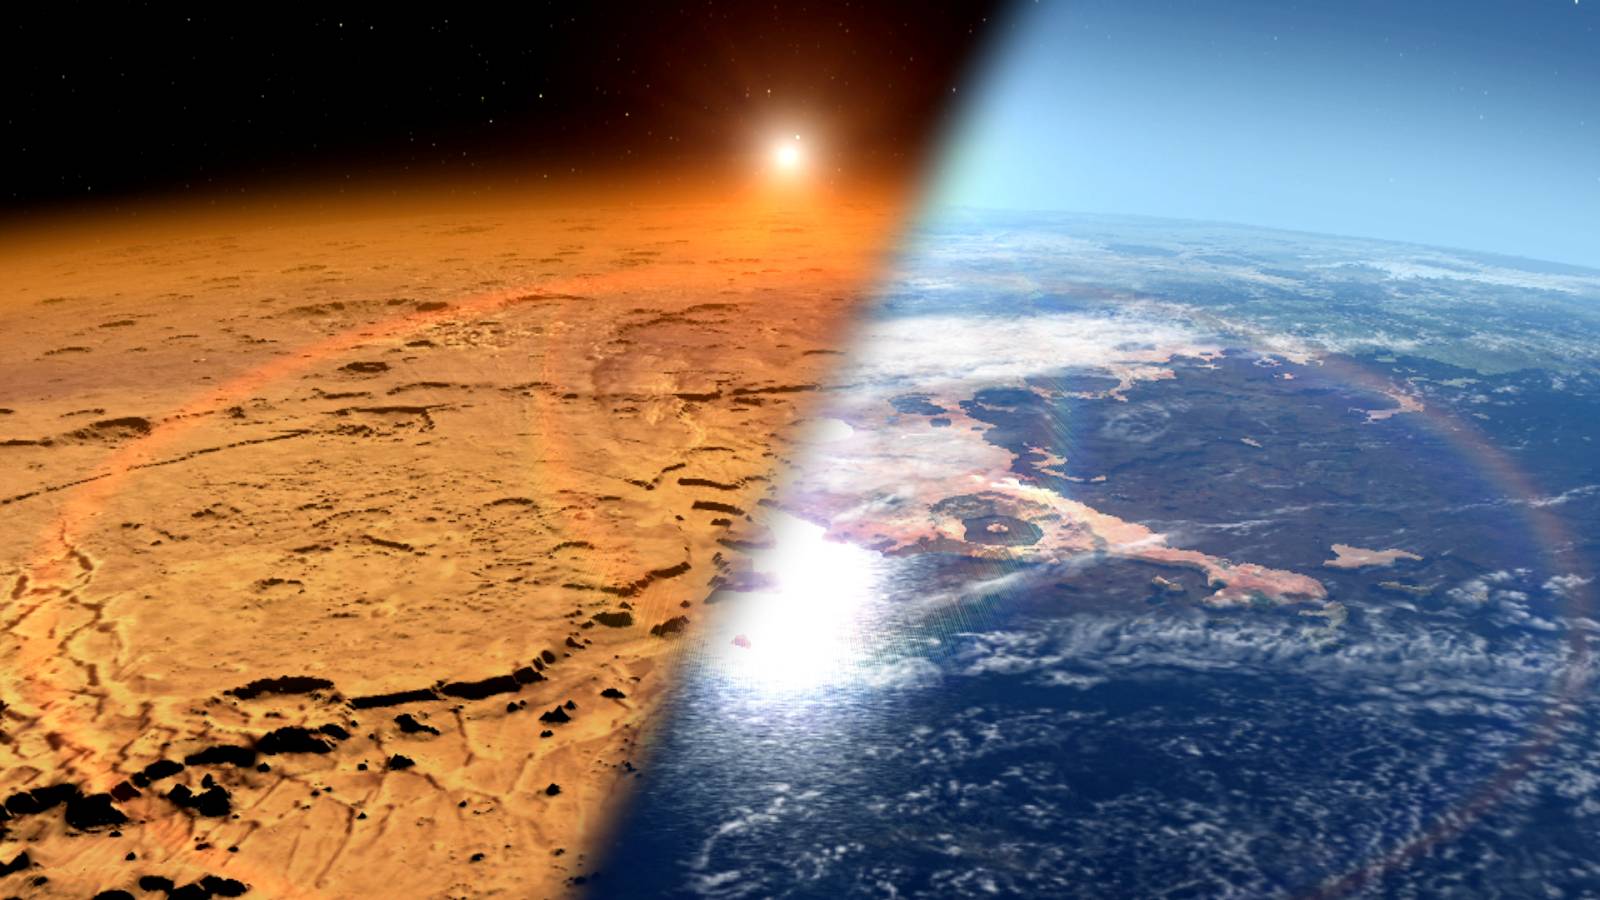 Planeet Mars. NASA verbaast met een ONGELOOFLIJKE nieuwe ontdekking